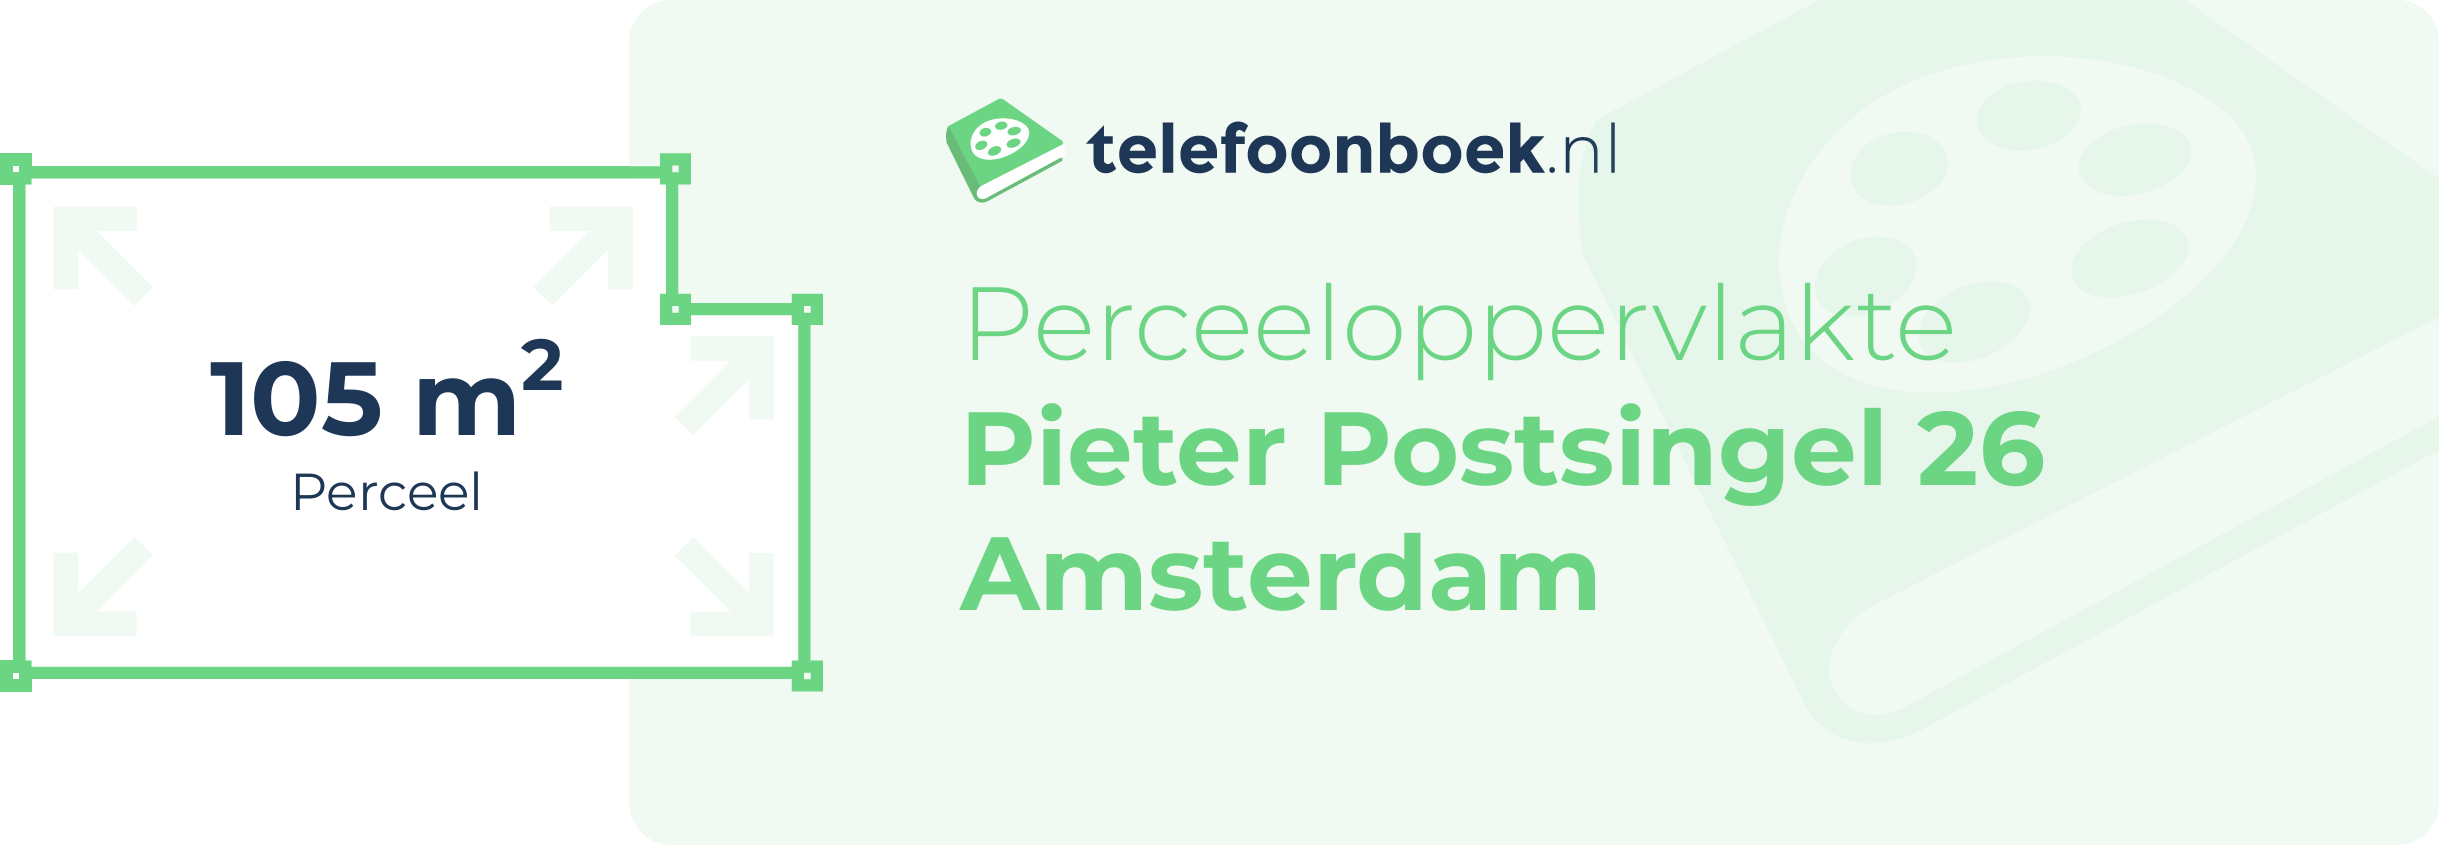 Perceeloppervlakte Pieter Postsingel 26 Amsterdam